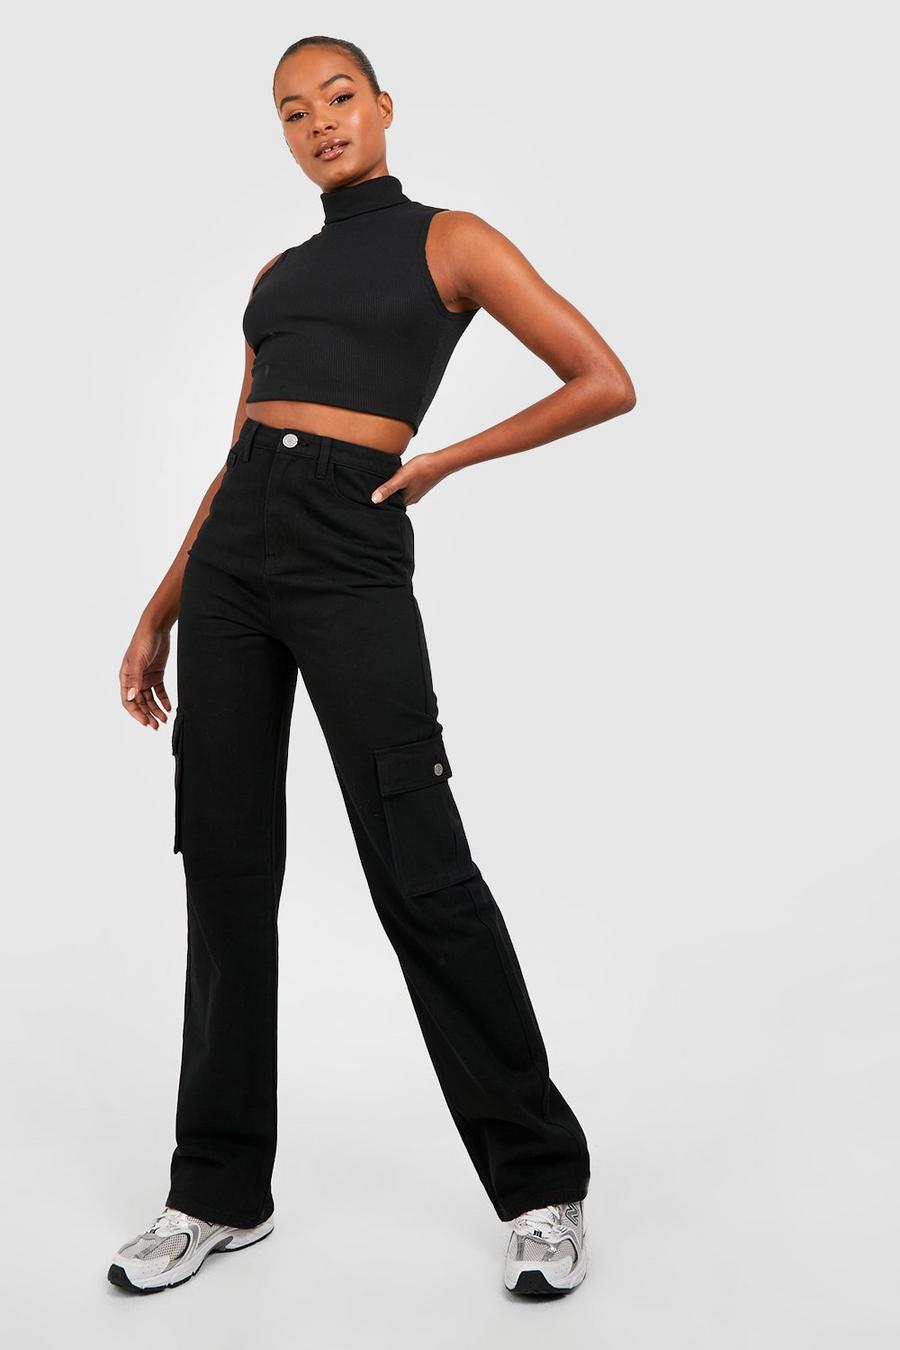 שחור ג'ינס דגמ'ח בגזרת רגל ישרה ובגזרת מותניים גבוהה, לנשים גבוהות